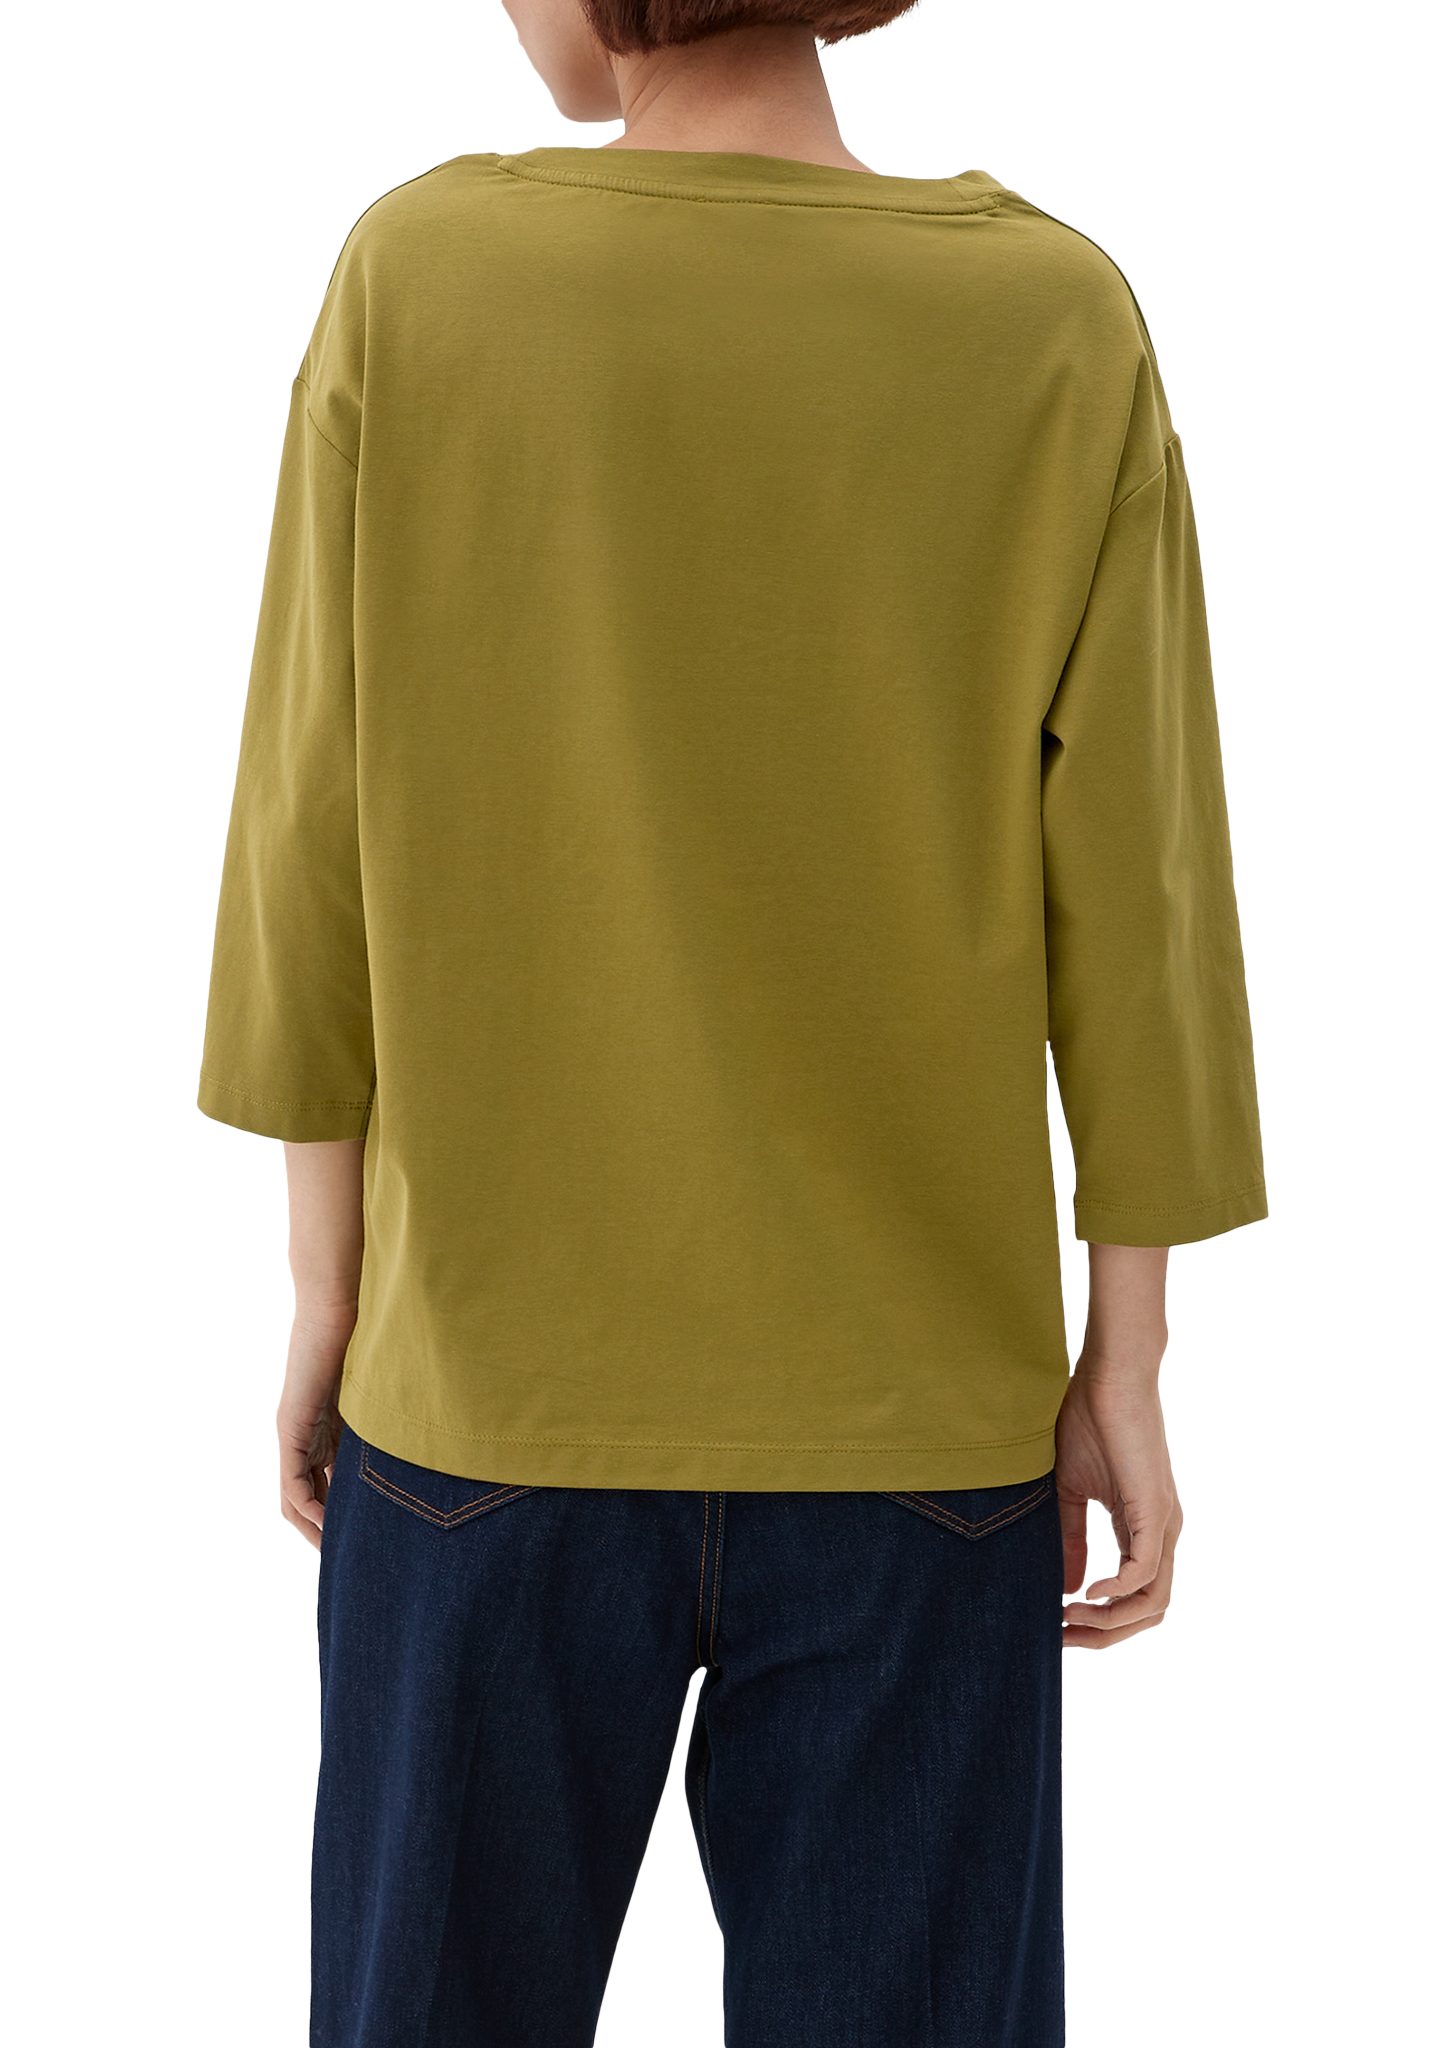 guacamole T-Shirt Brusttasche s.Oliver mit 3/4-Arm-Shirt